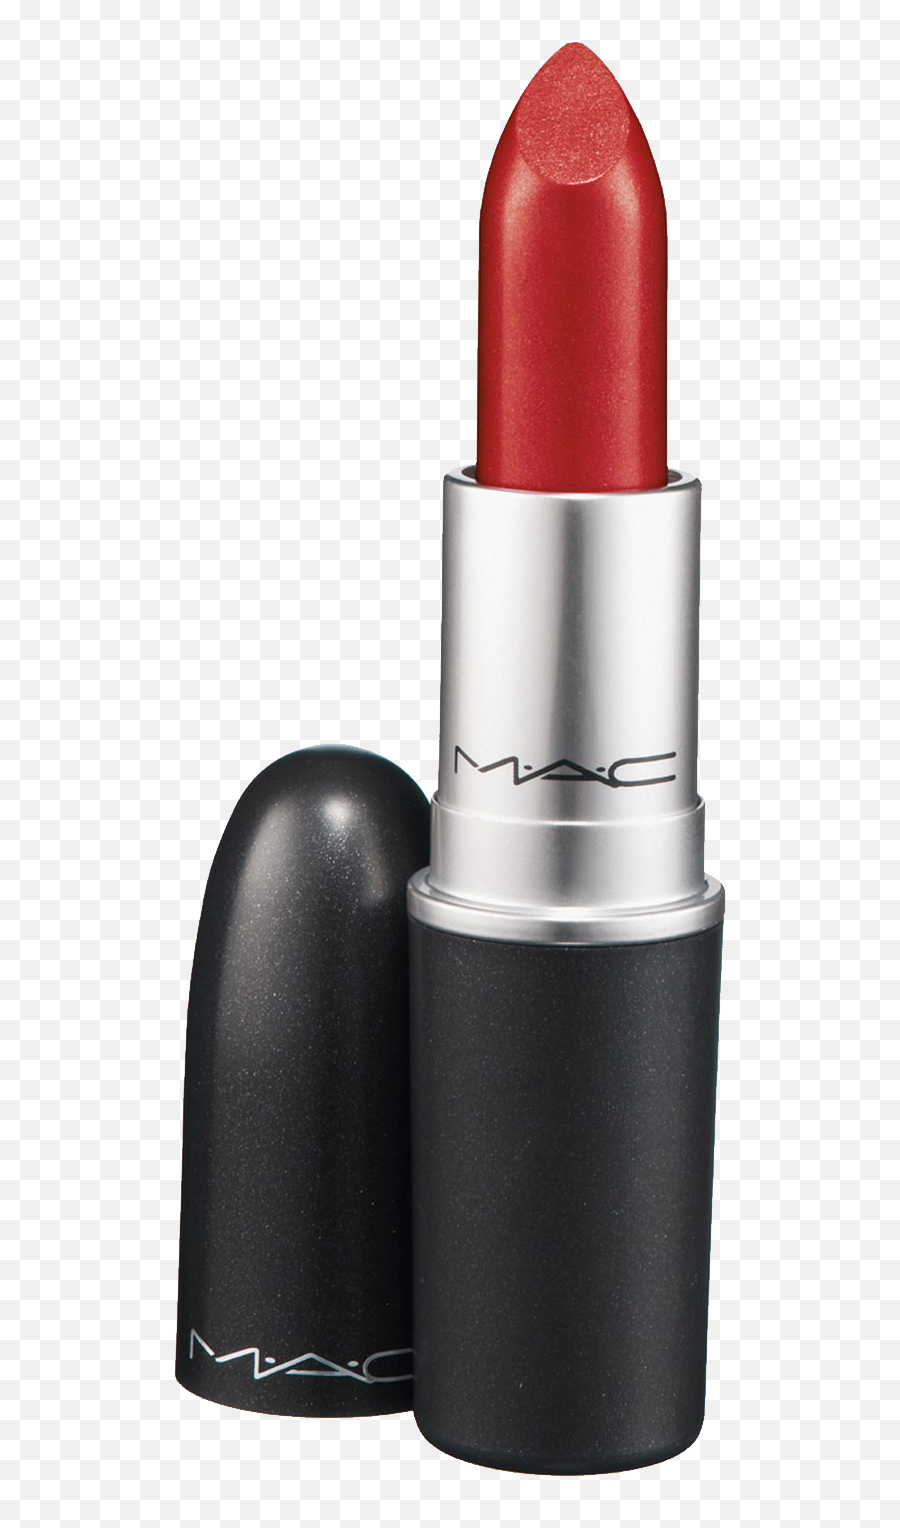 Lipstick Transparent Png Image - Transparent Mac Lipstick Png,Icon Lipstick By Mac